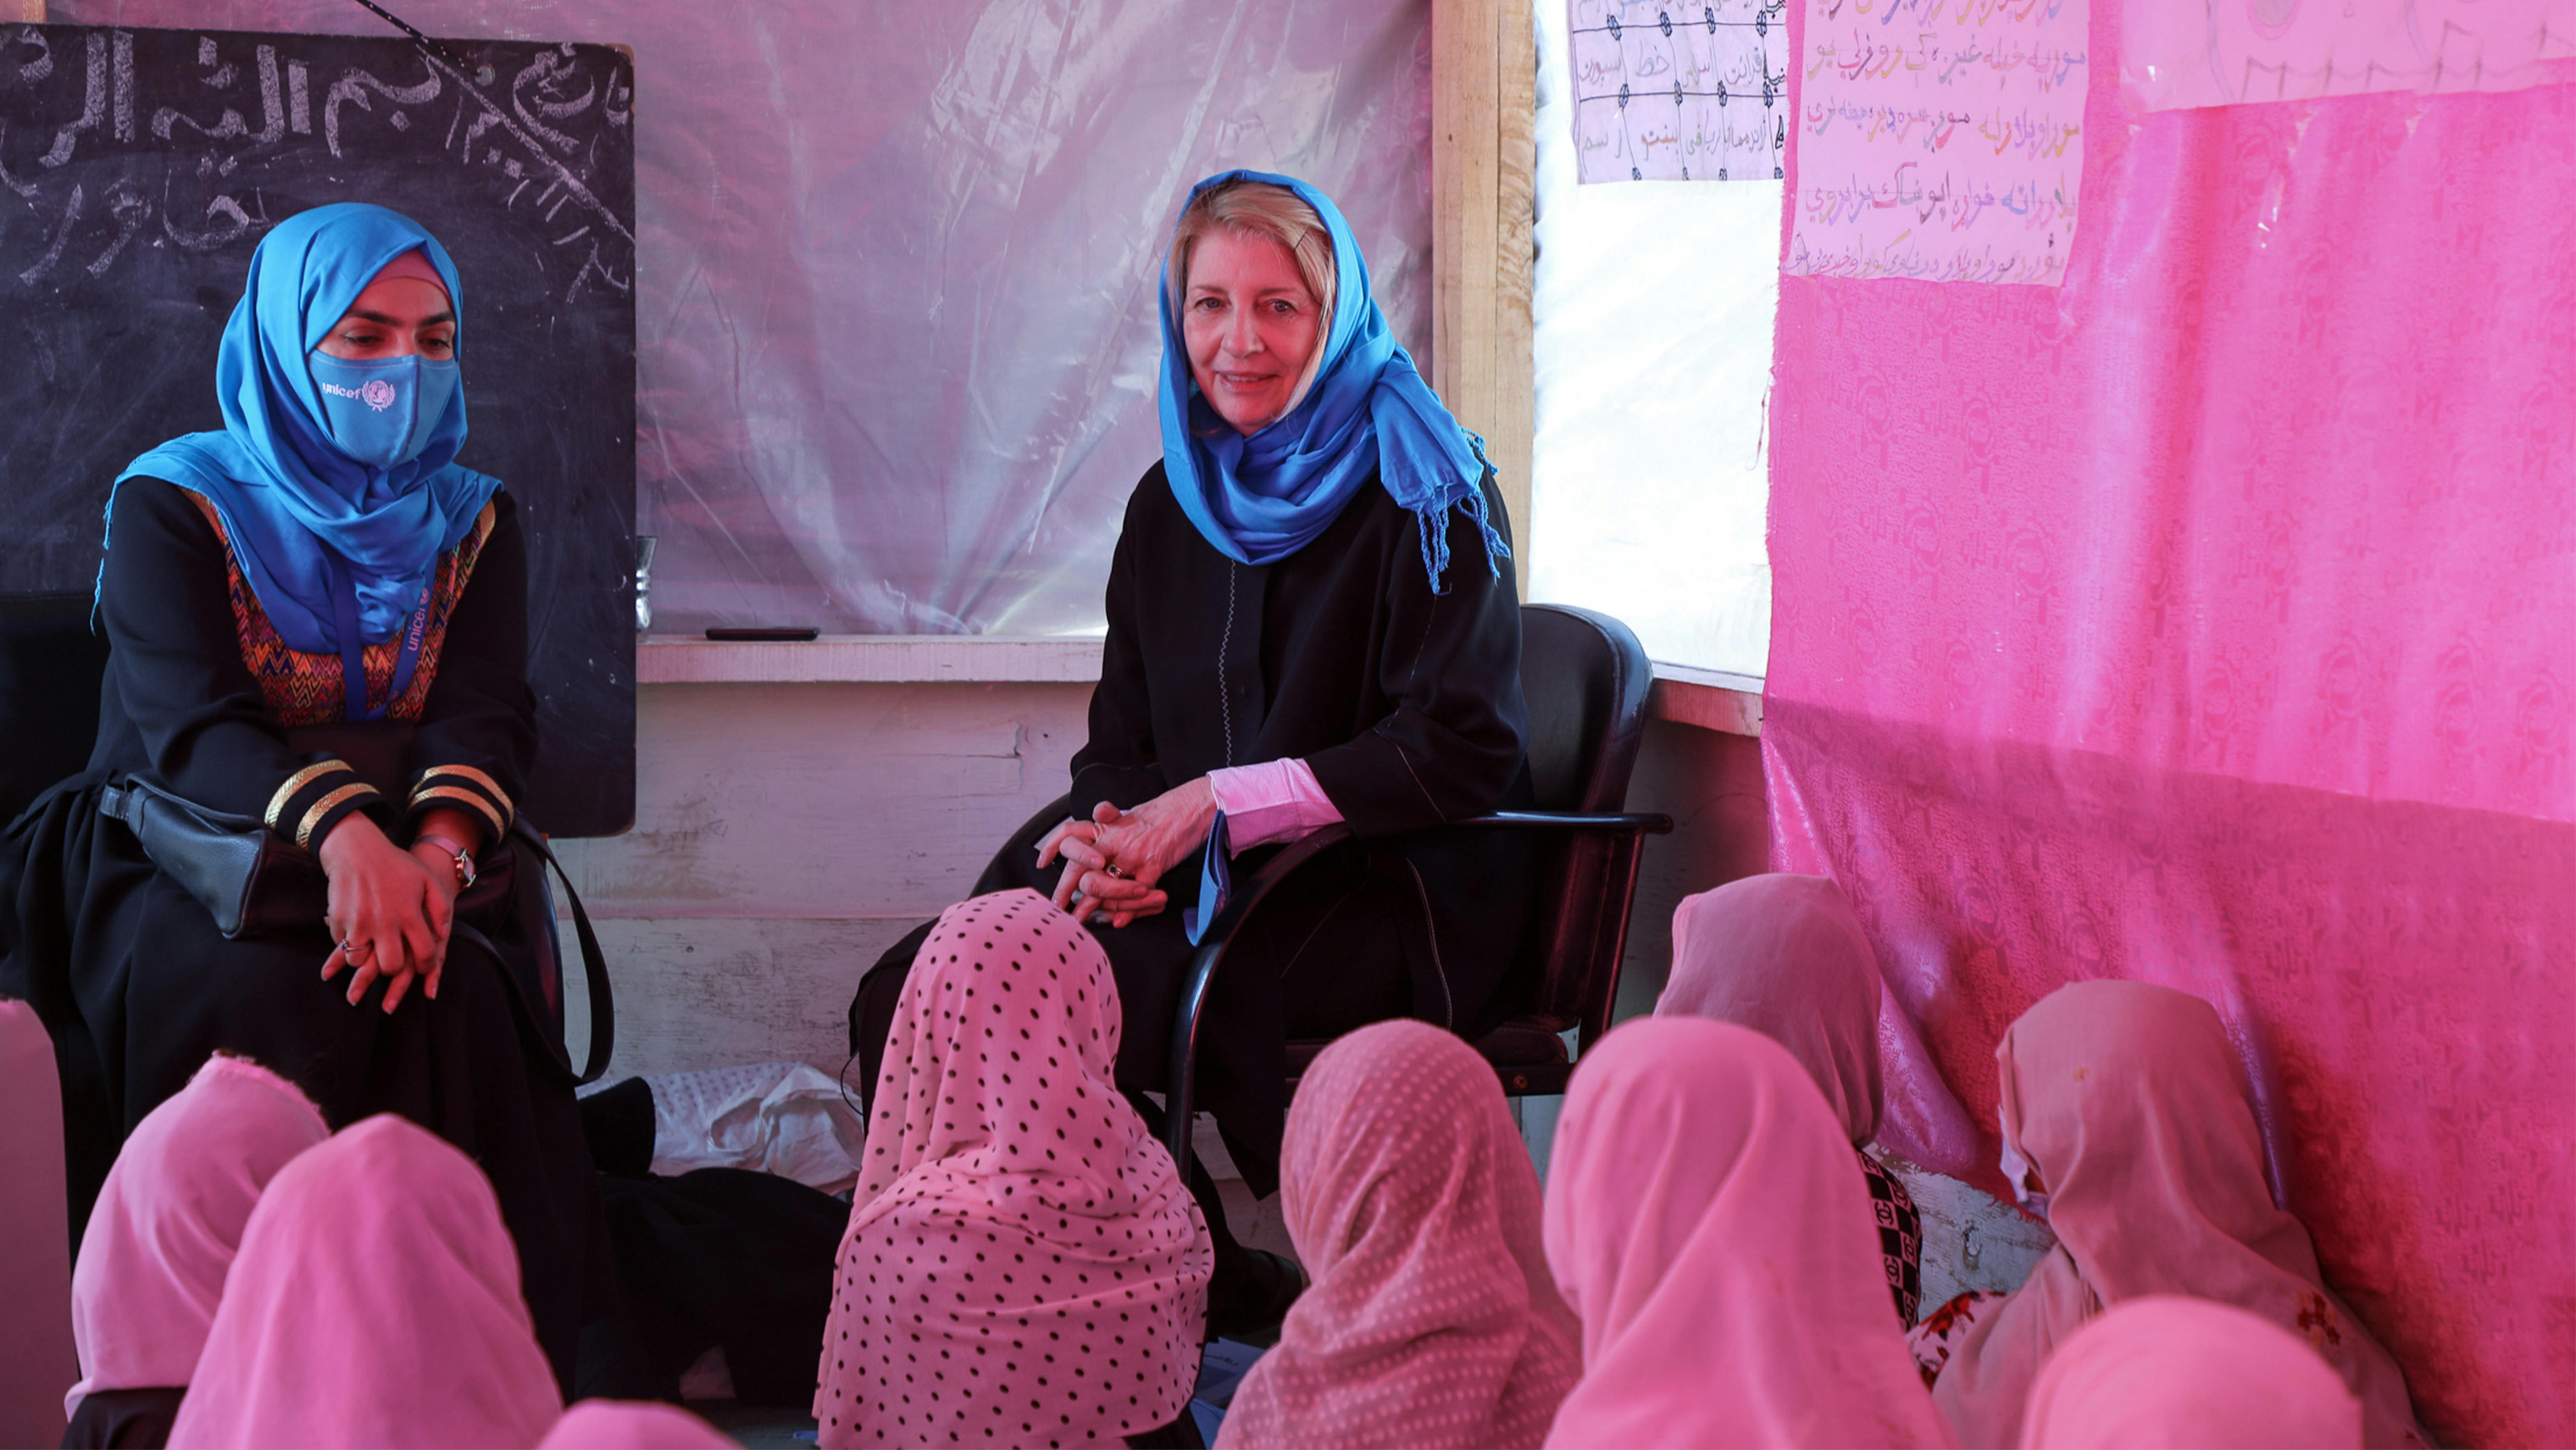 Catherine Russell, Direttore Esecutivo dell'UNICEF, parla con le ragazze che frequentano le lezioni in una scuola comunitaria sostenuta dall'UNICEF nel distretto di Dand a Kandahar.